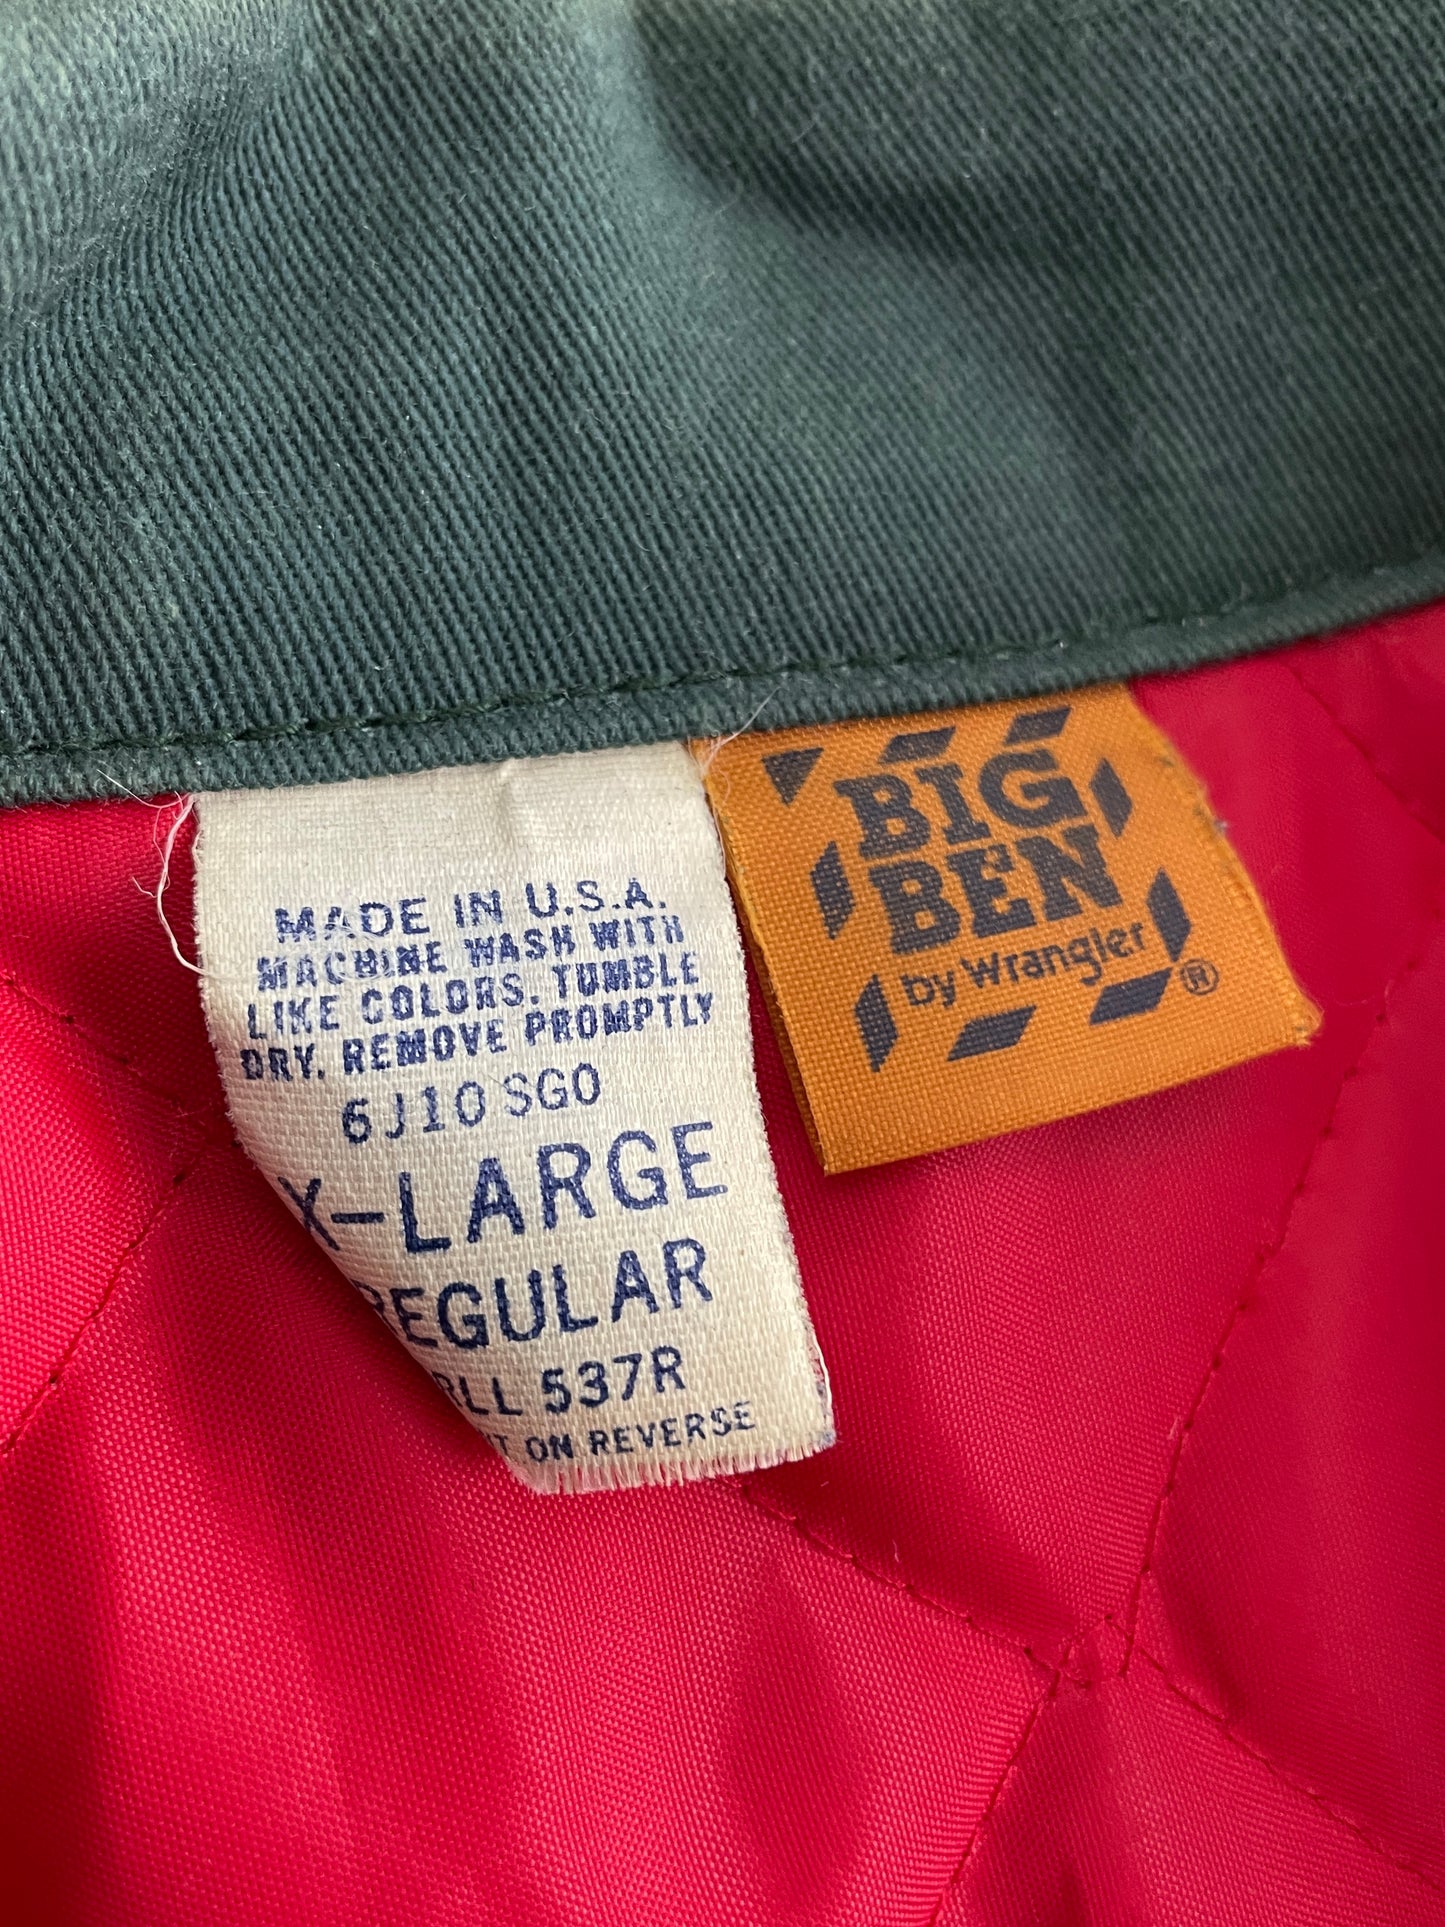 Faded Big Ben Mechanic Jacket [XL]